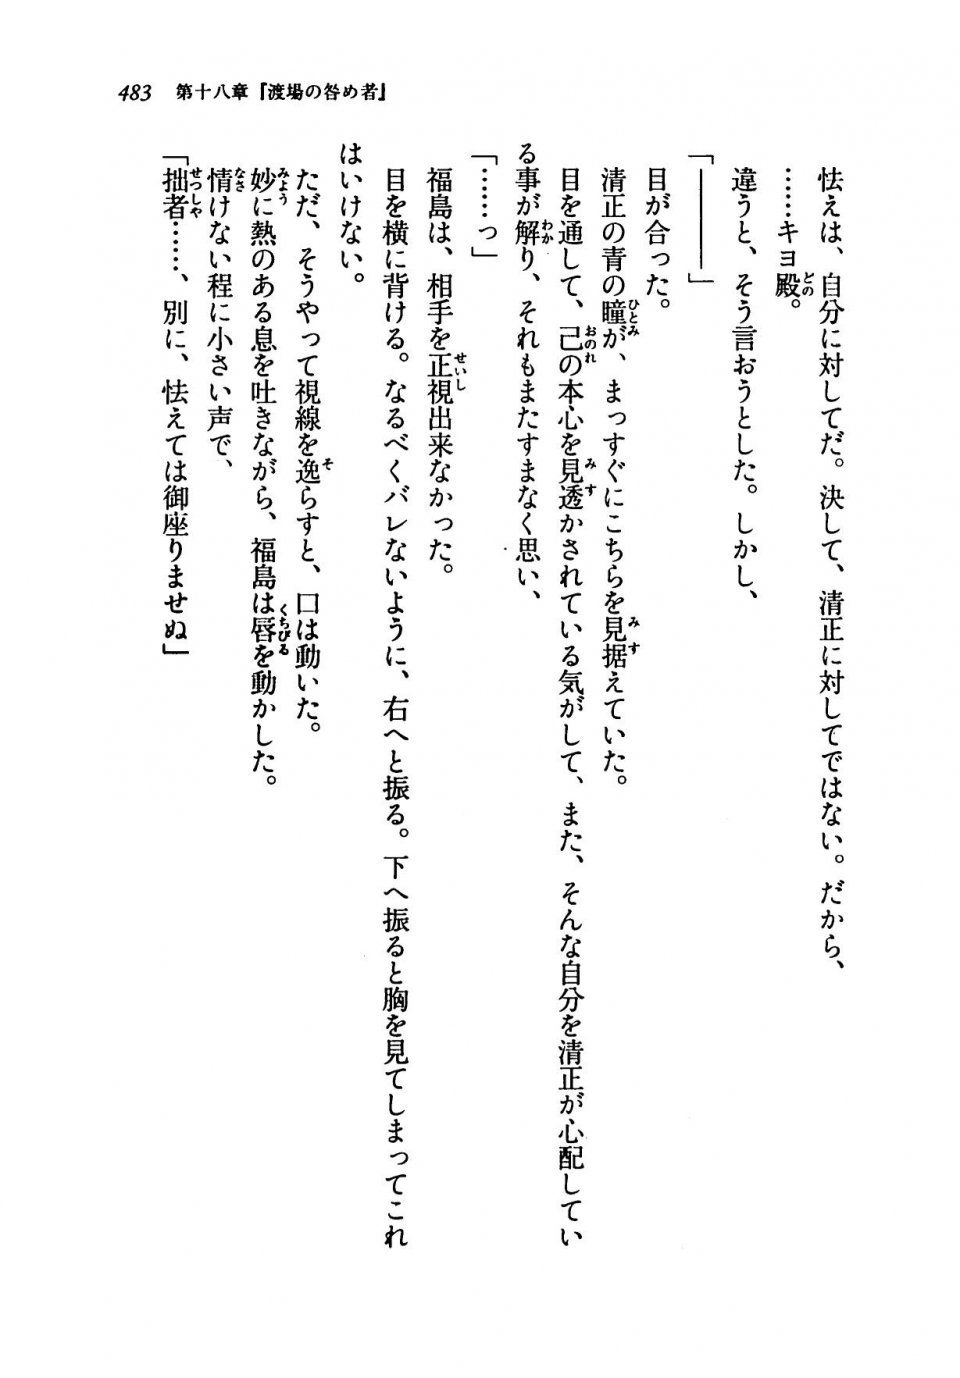 Kyoukai Senjou no Horizon LN Vol 19(8A) - Photo #483